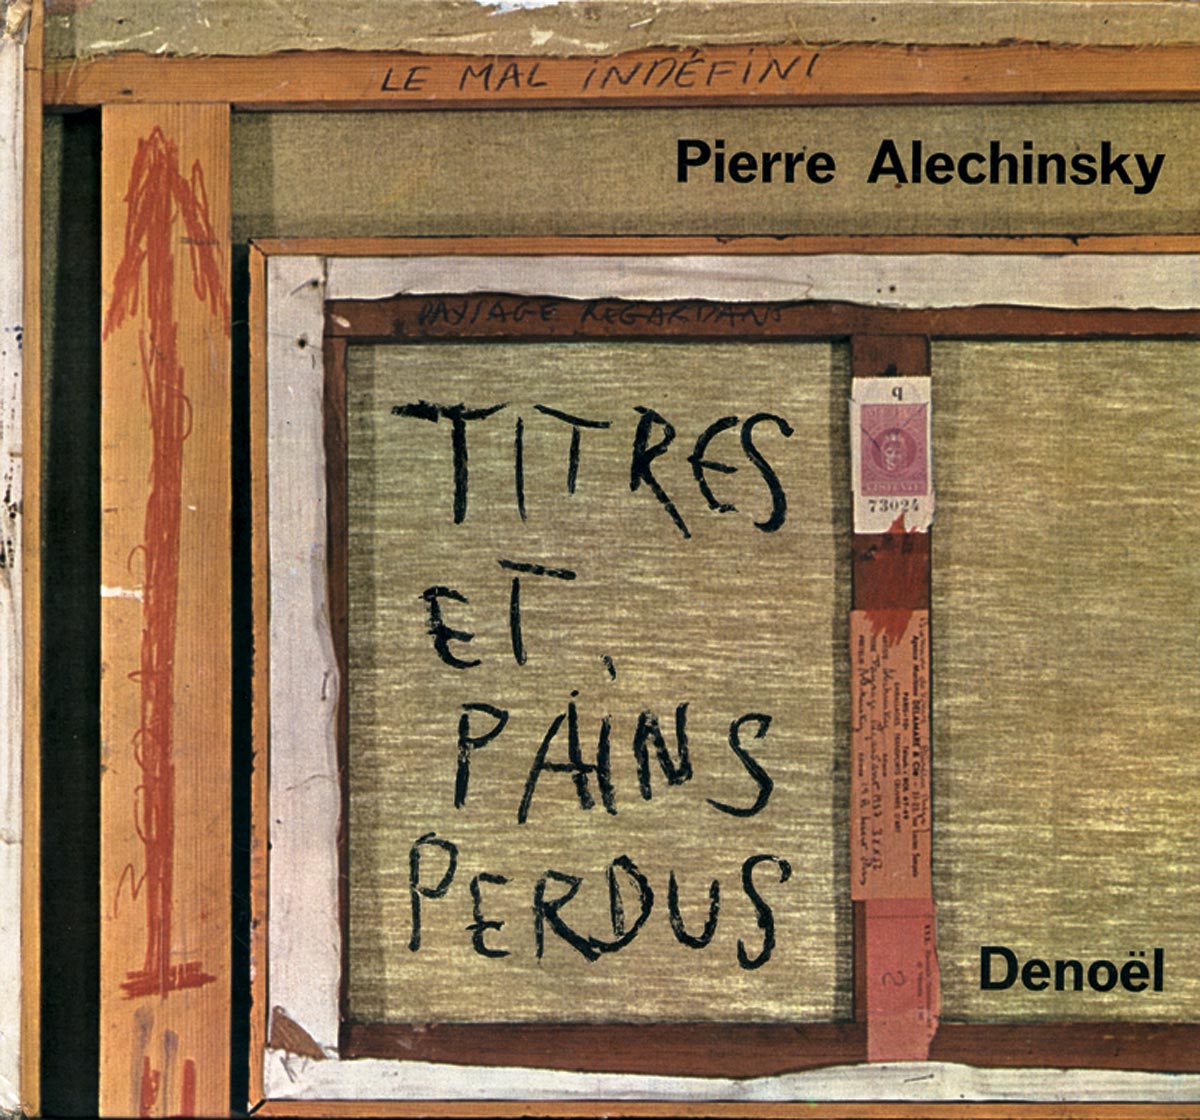 Pierre Alechinsky, Livre, -Titres et pains perdus-, 1965